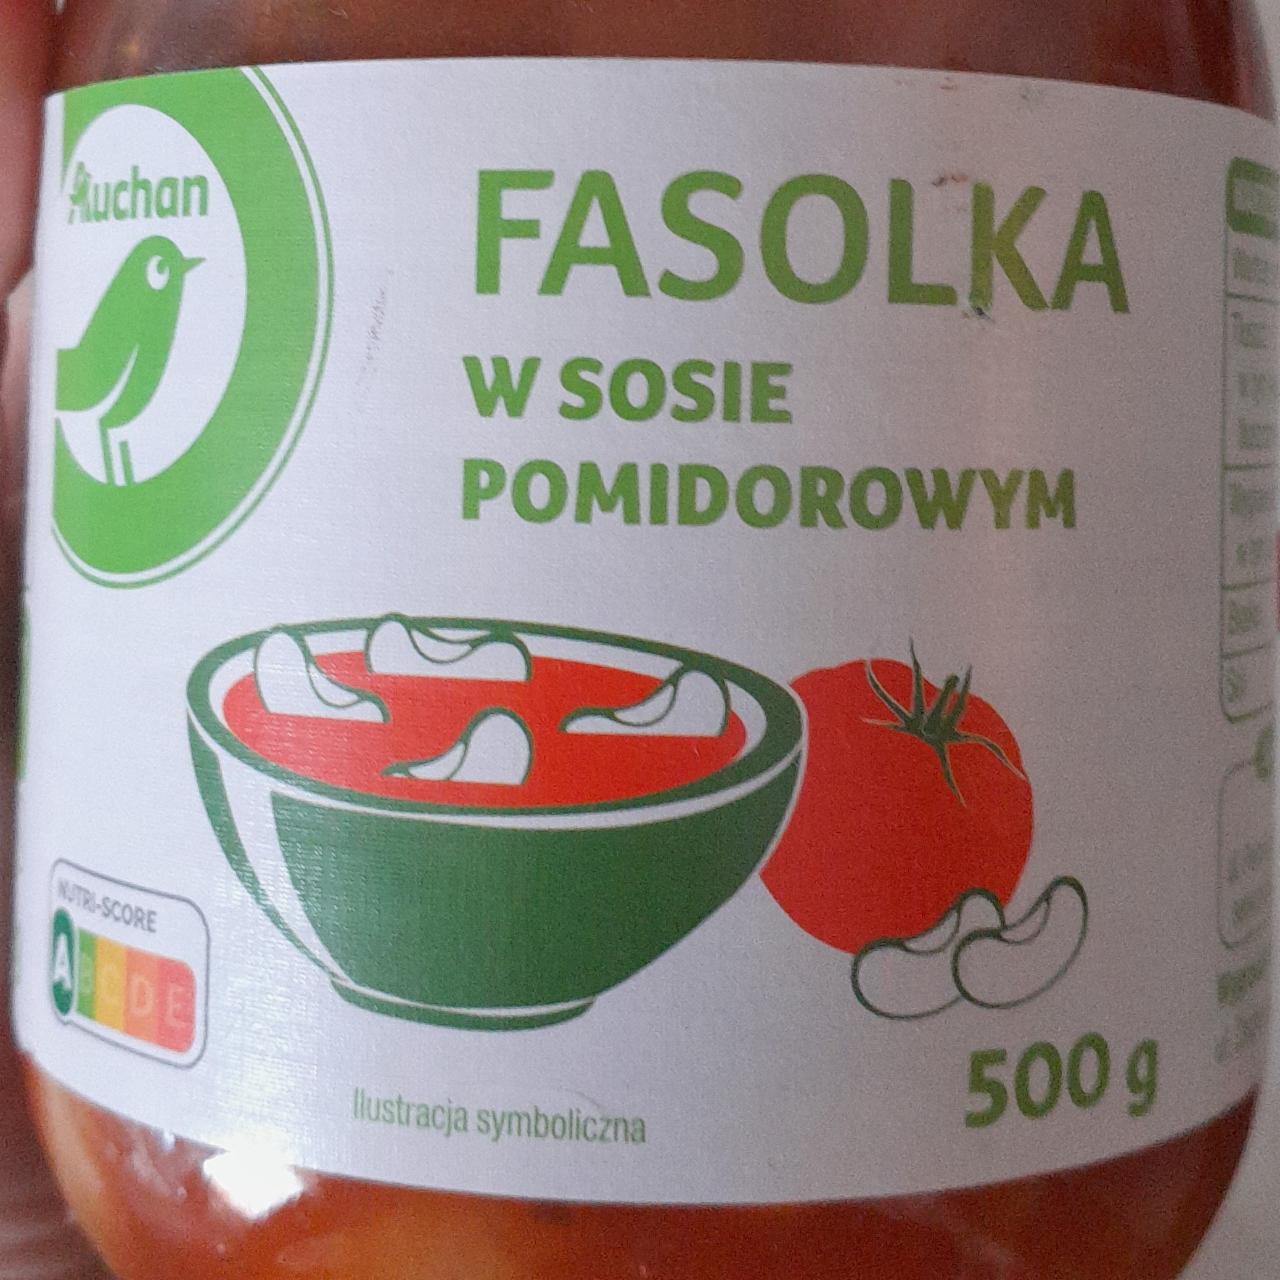 Zdjęcia - Fasolka w sosie pomidorowym Auch